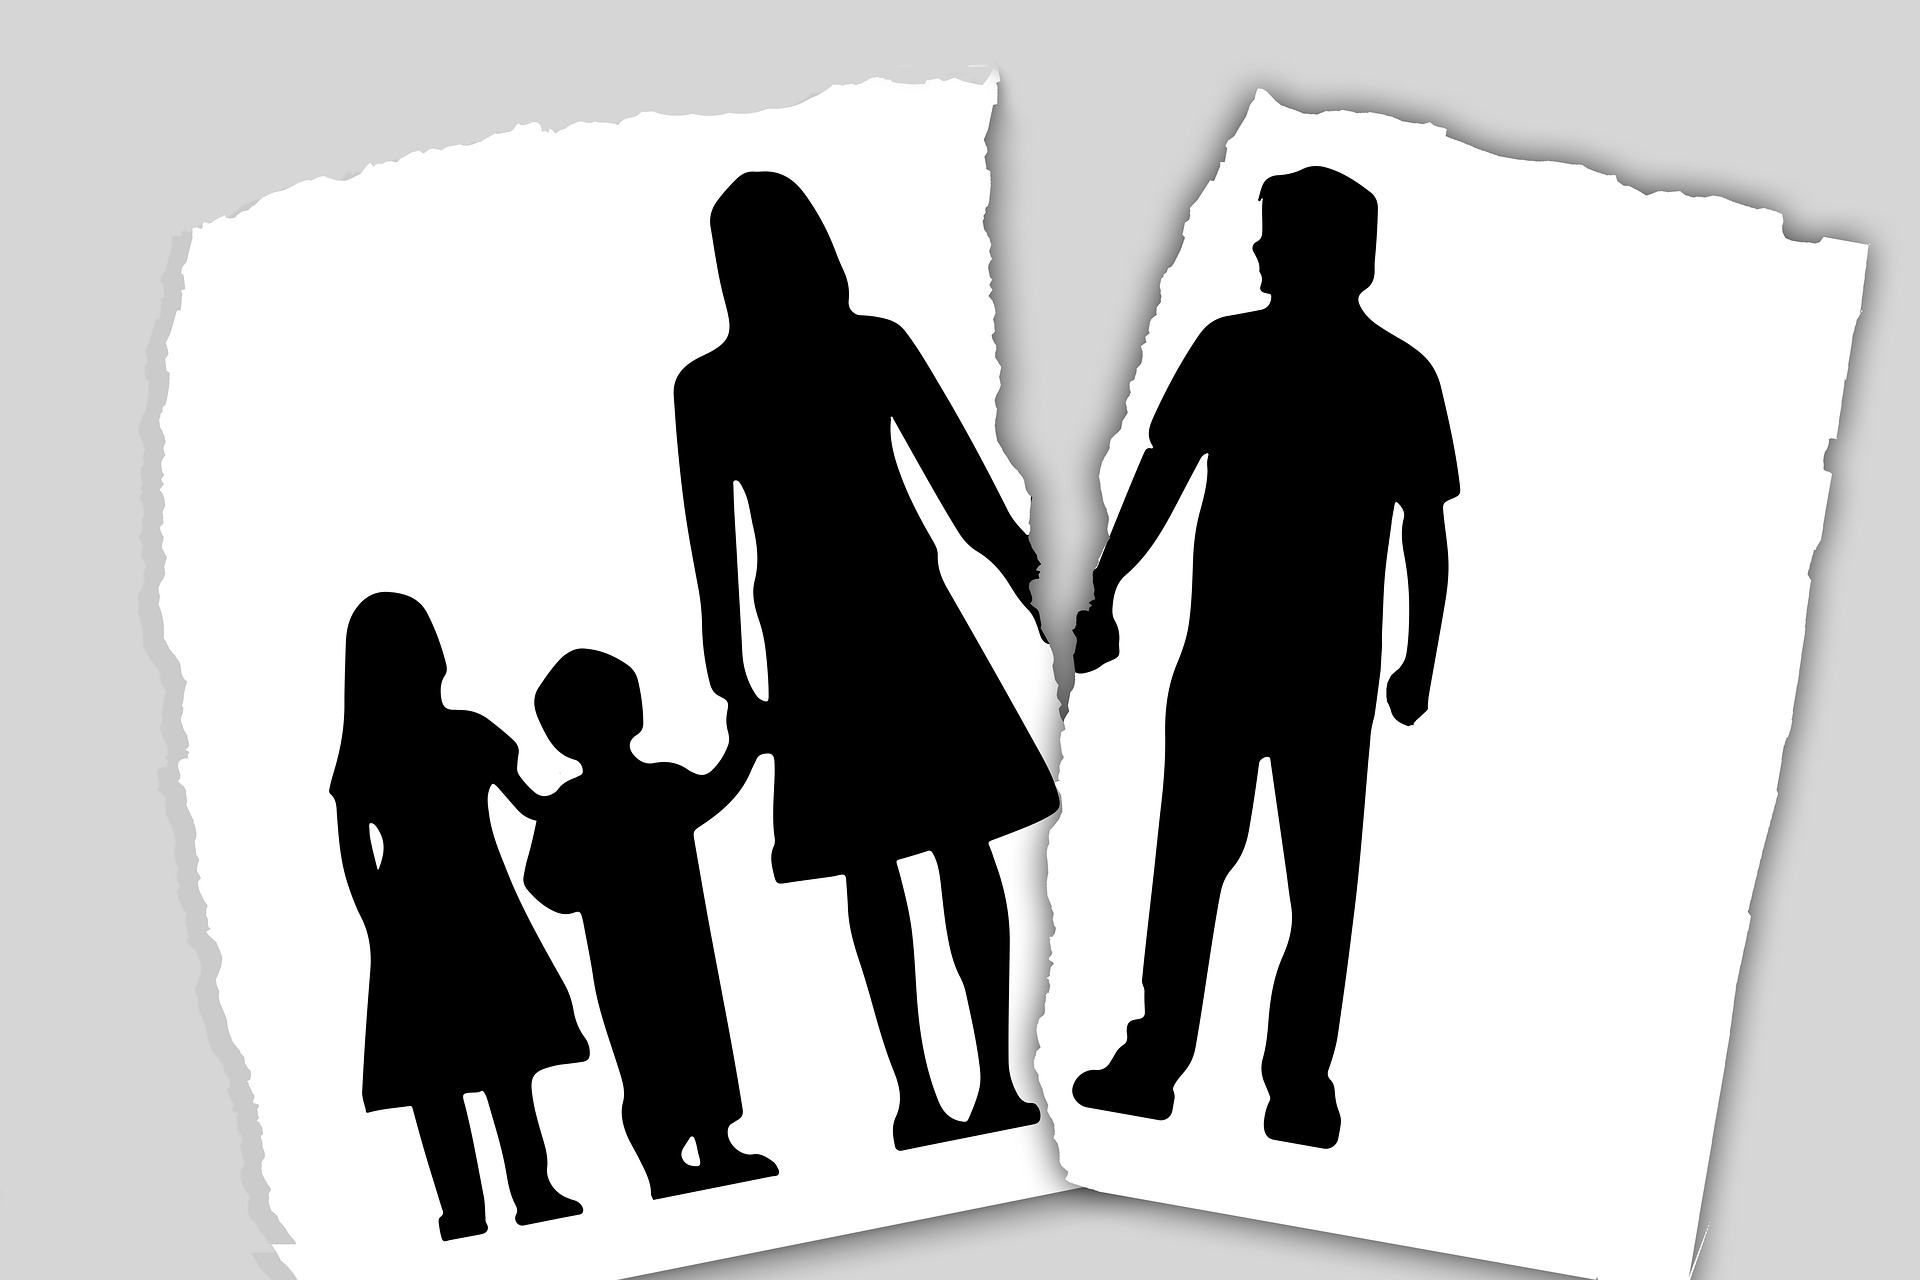 A broken family transition through divorce